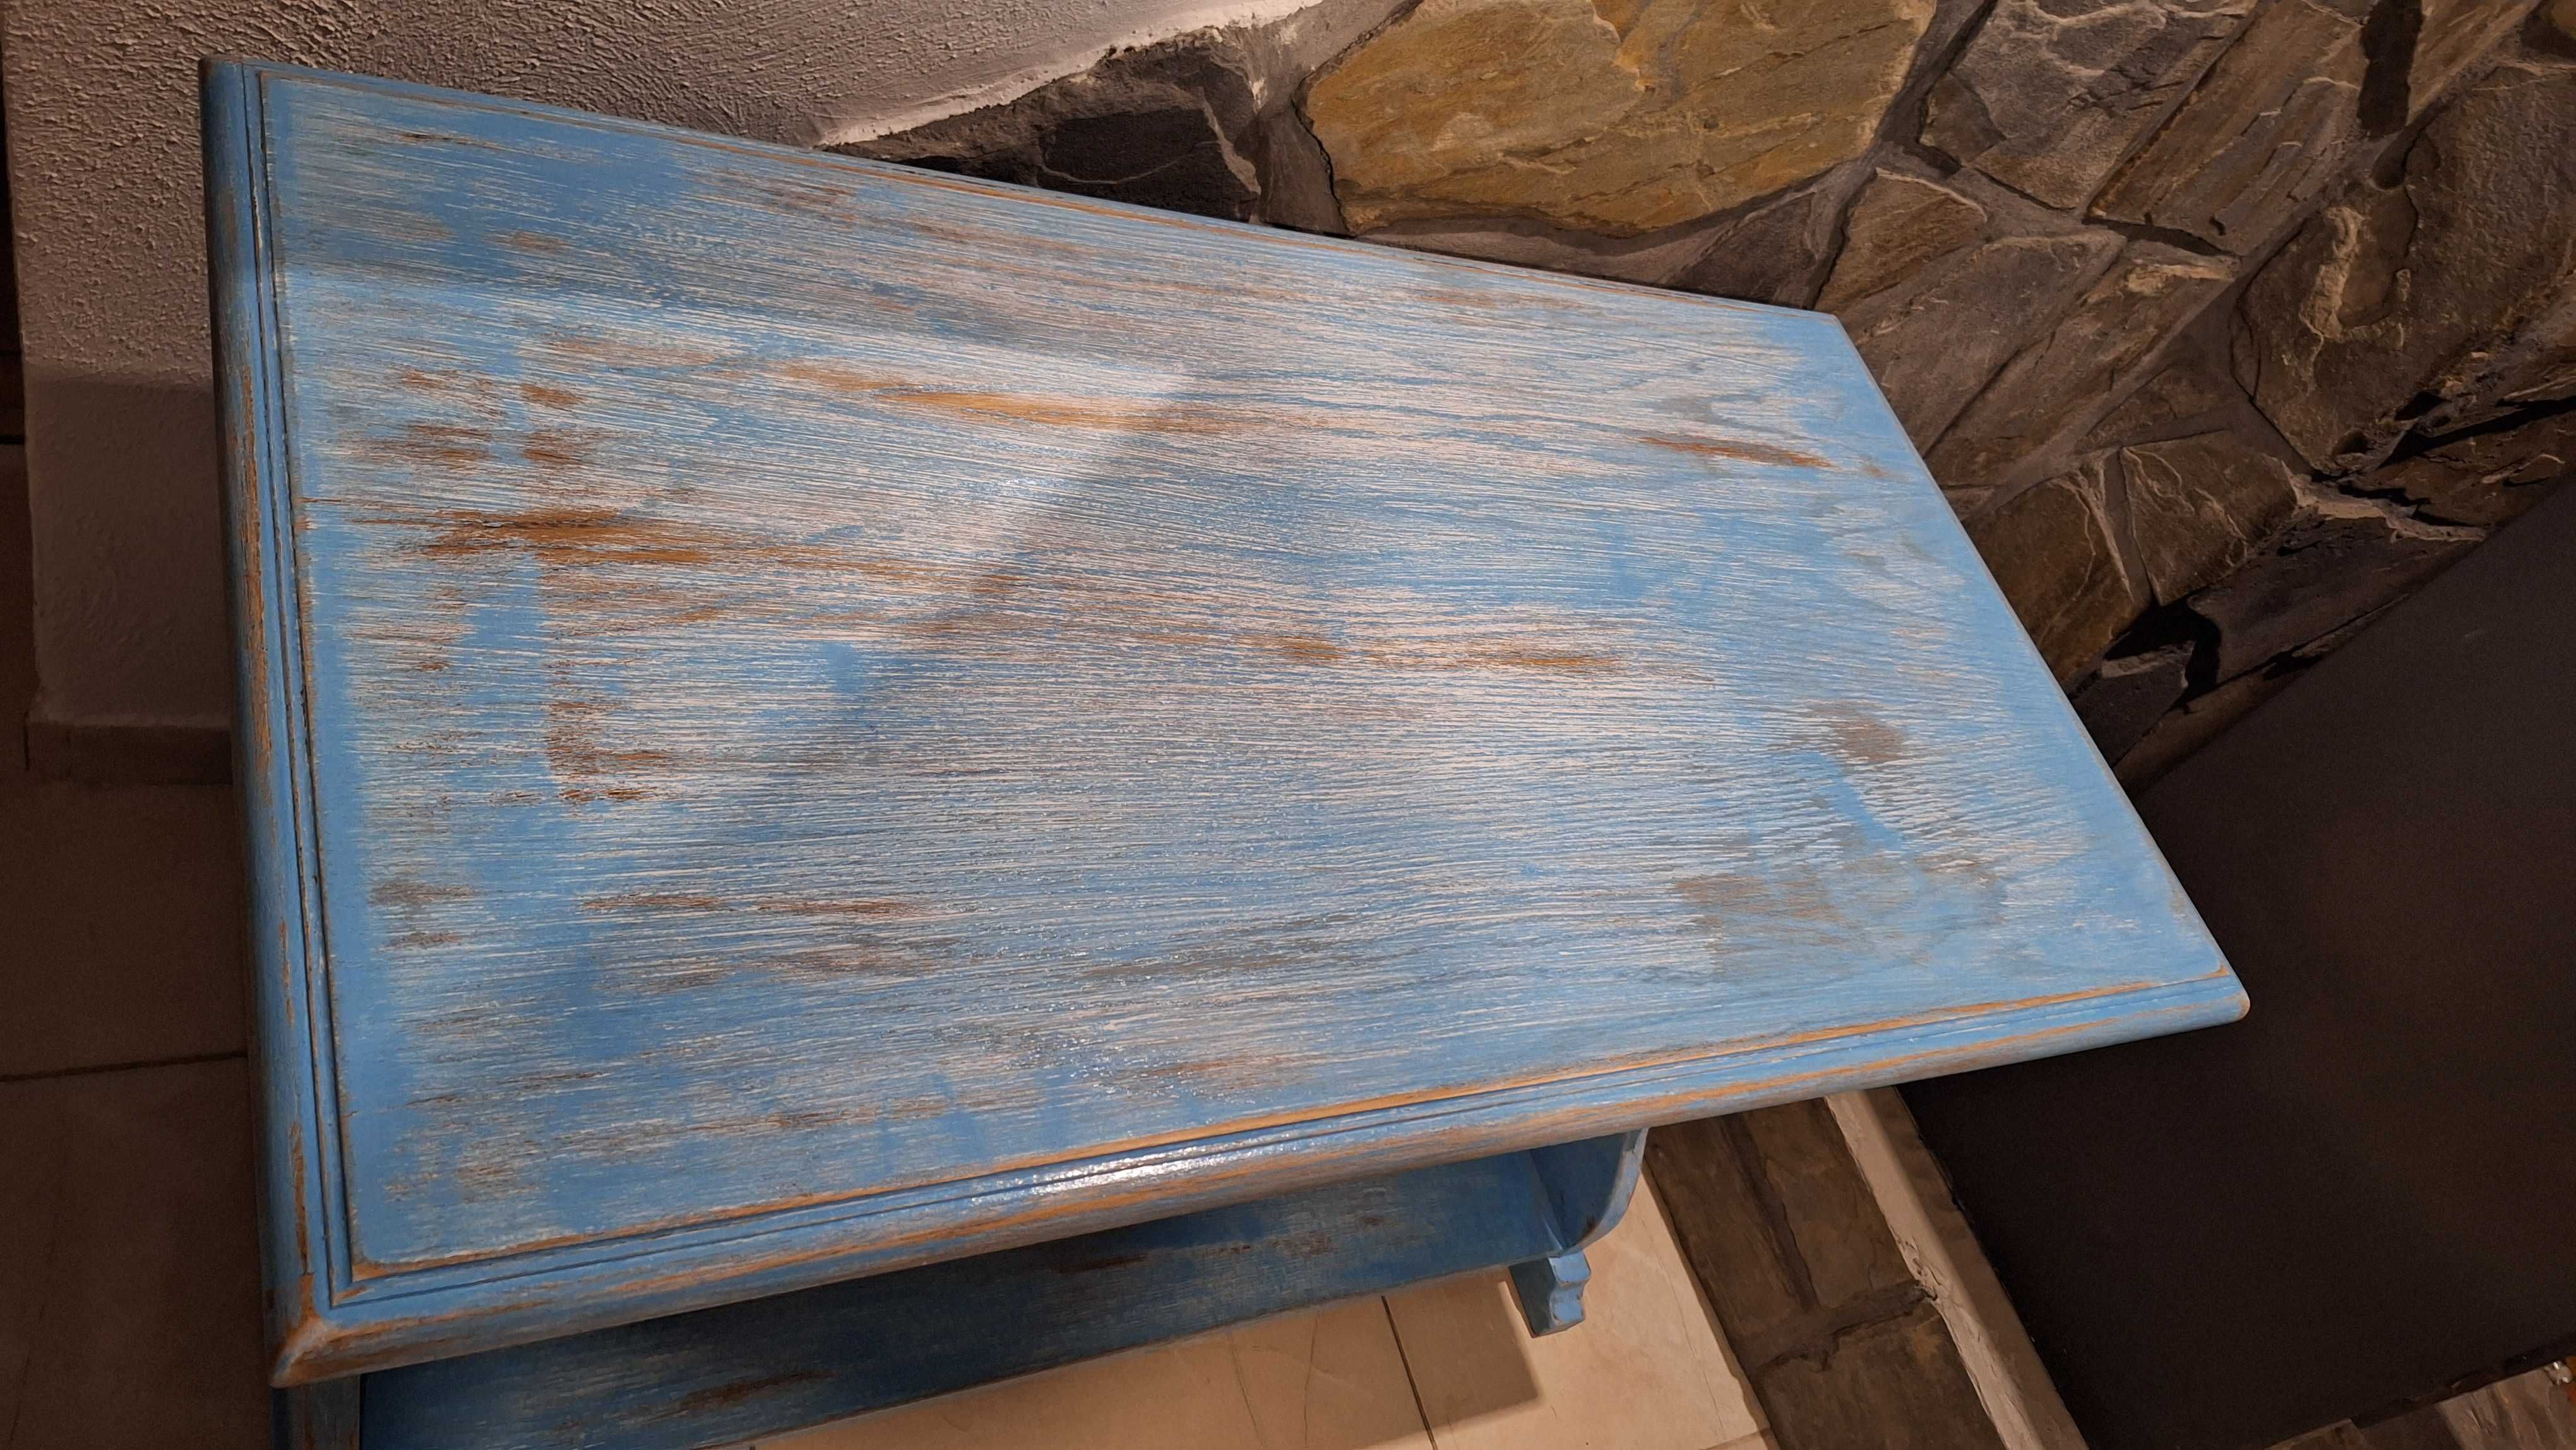 Drewniana Szafka Niebieska w stylu Vintage